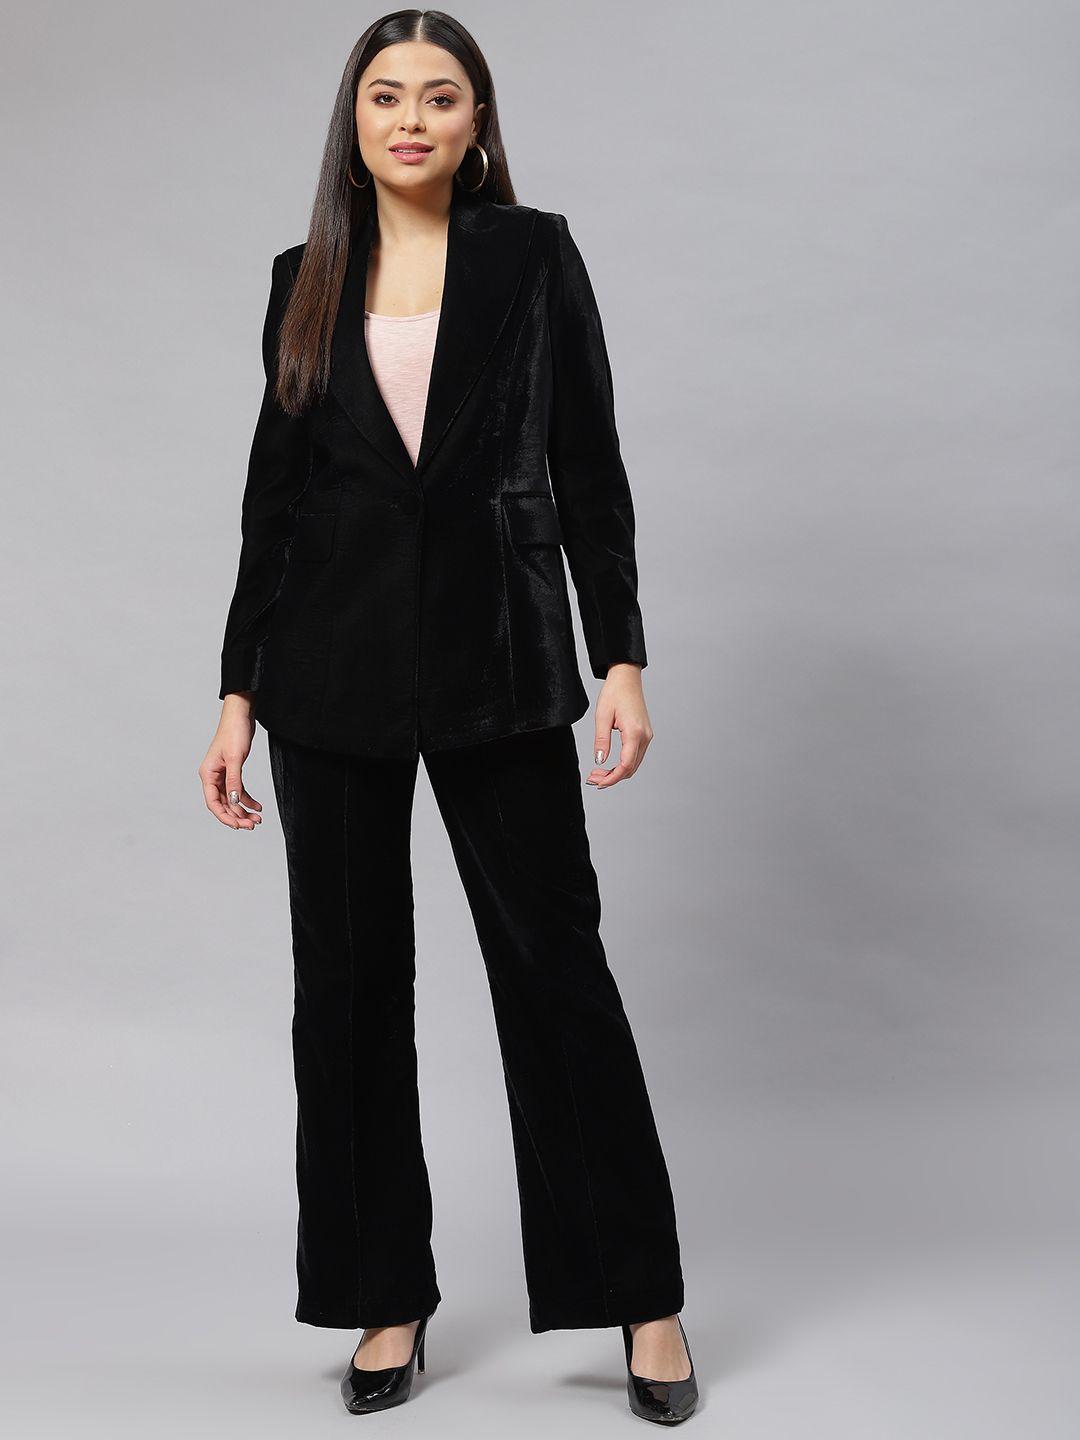 powersutra women black solid velvet finish blazer & trousers set